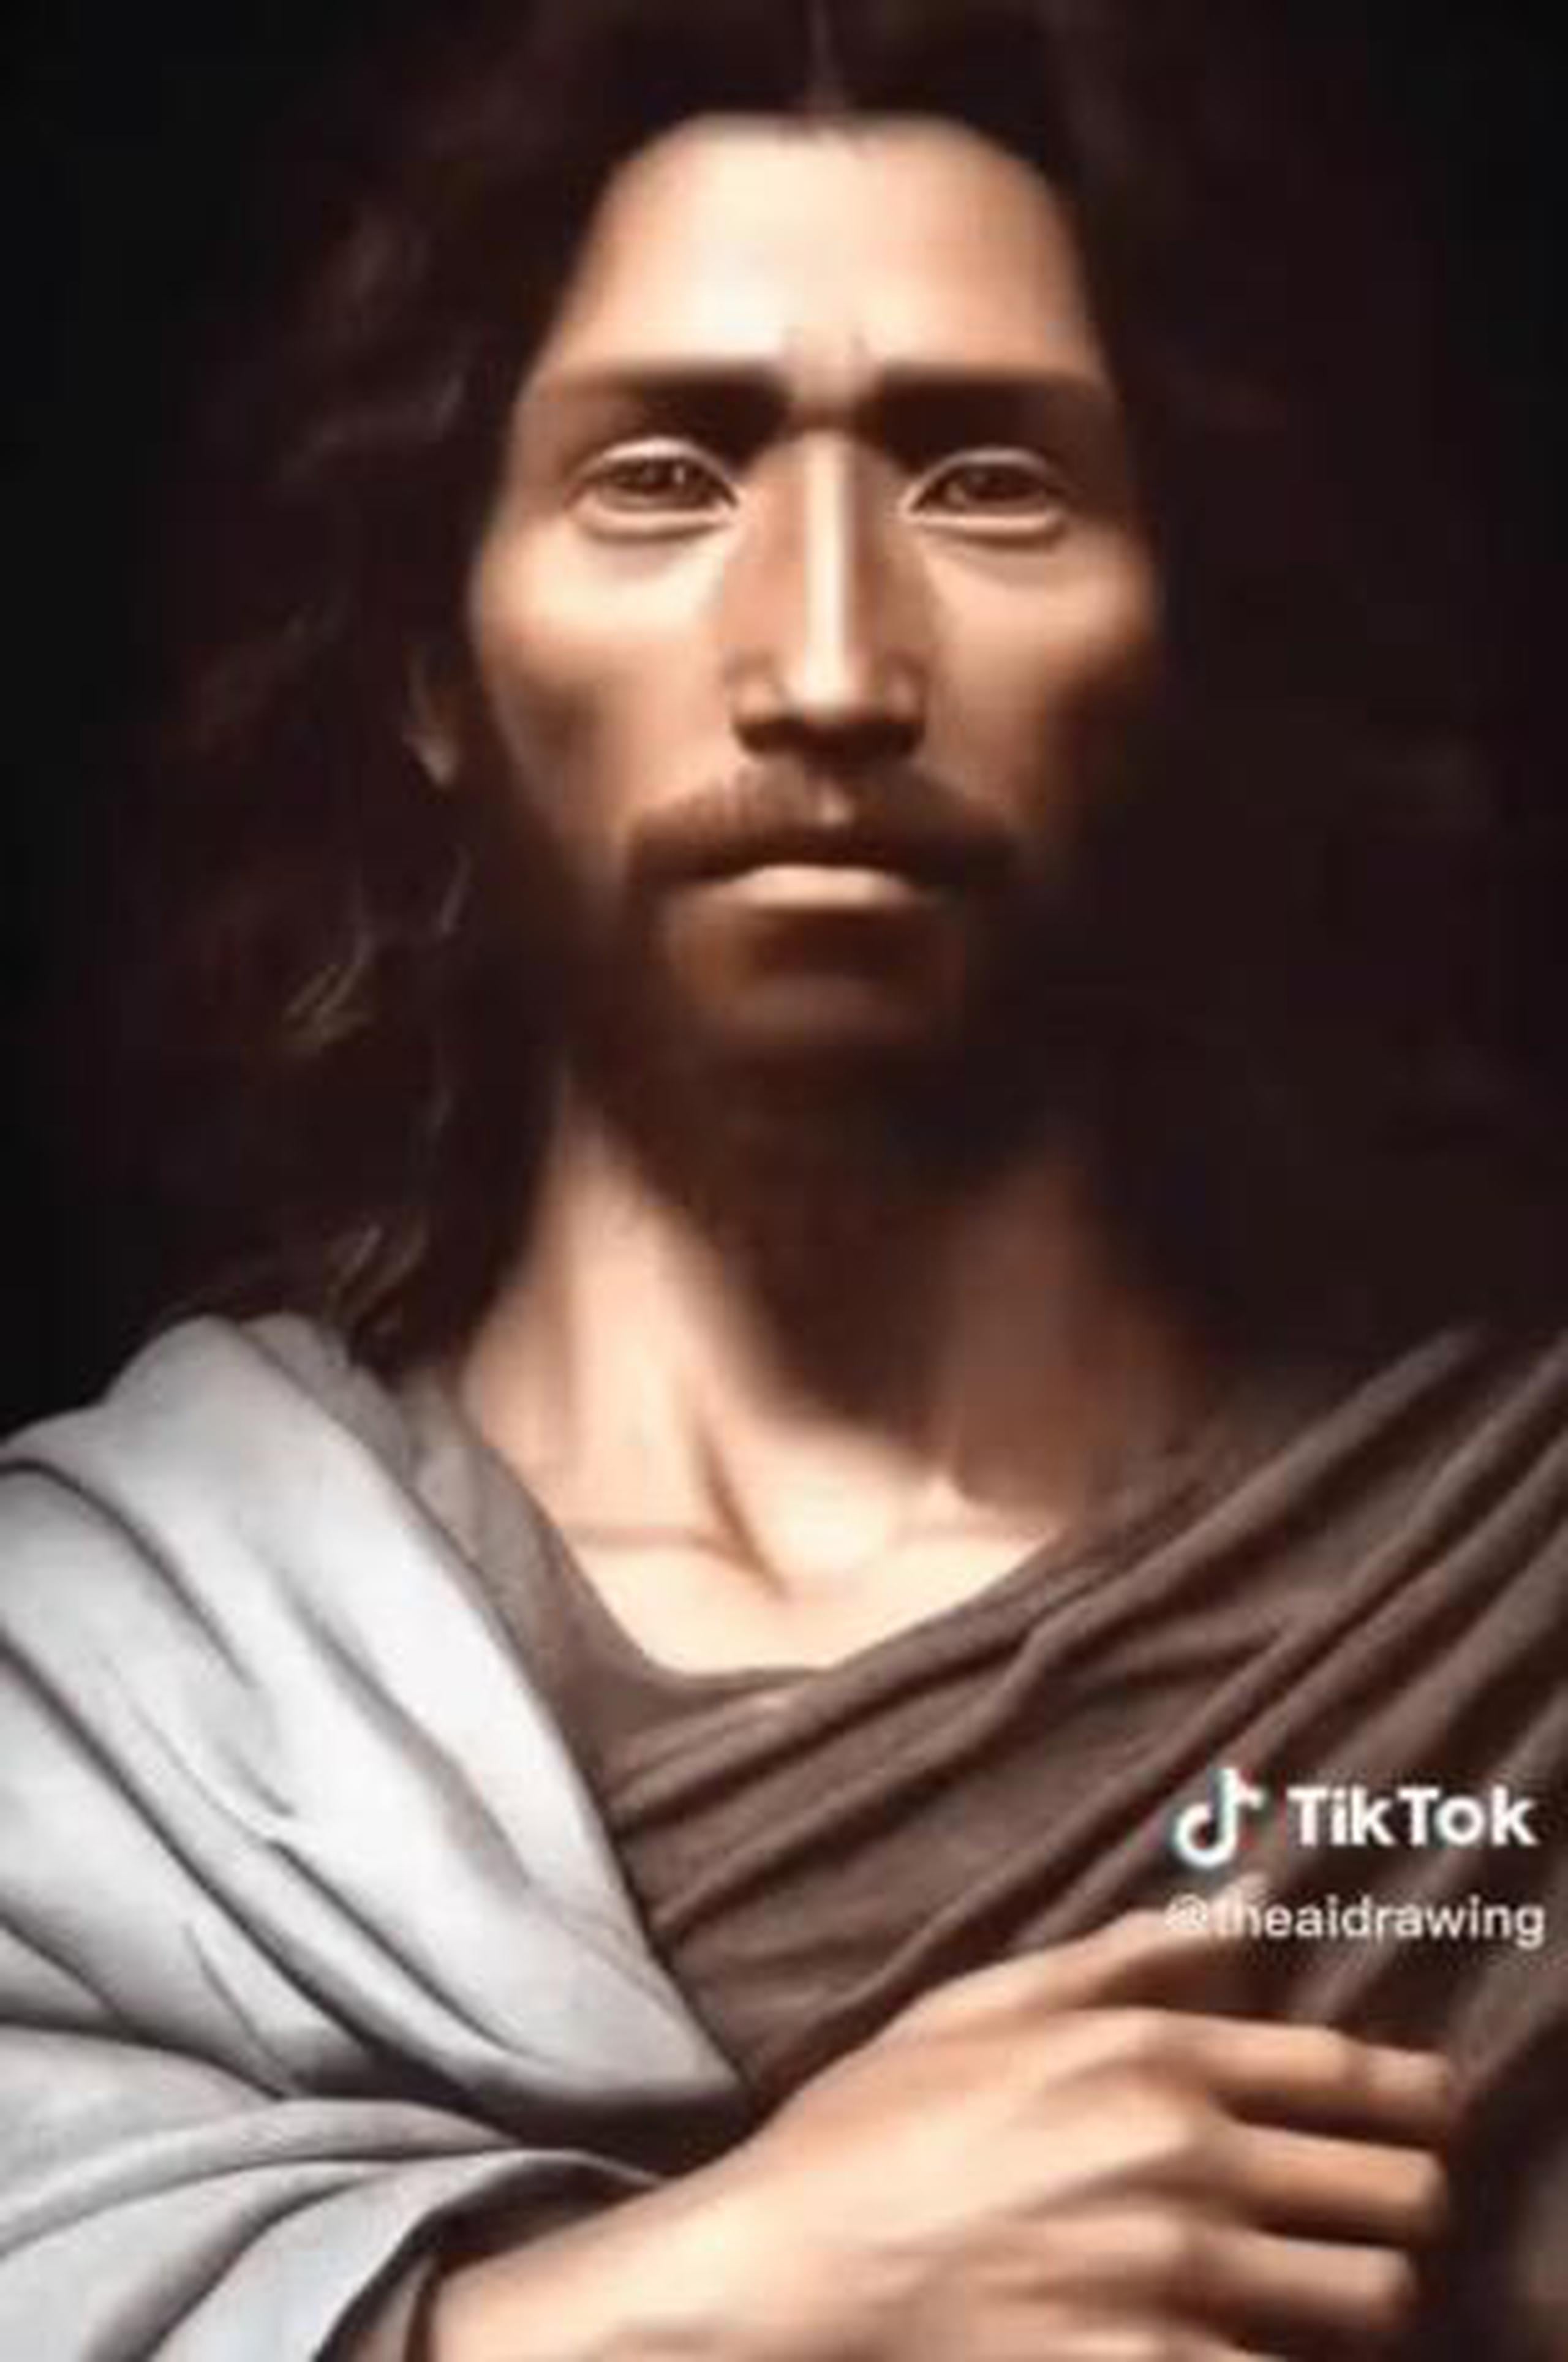 La imagen, generada con inteligencia artificial muestra a un hombre de piel morena, ojos marrones rasgos marcados y cabellera larga.